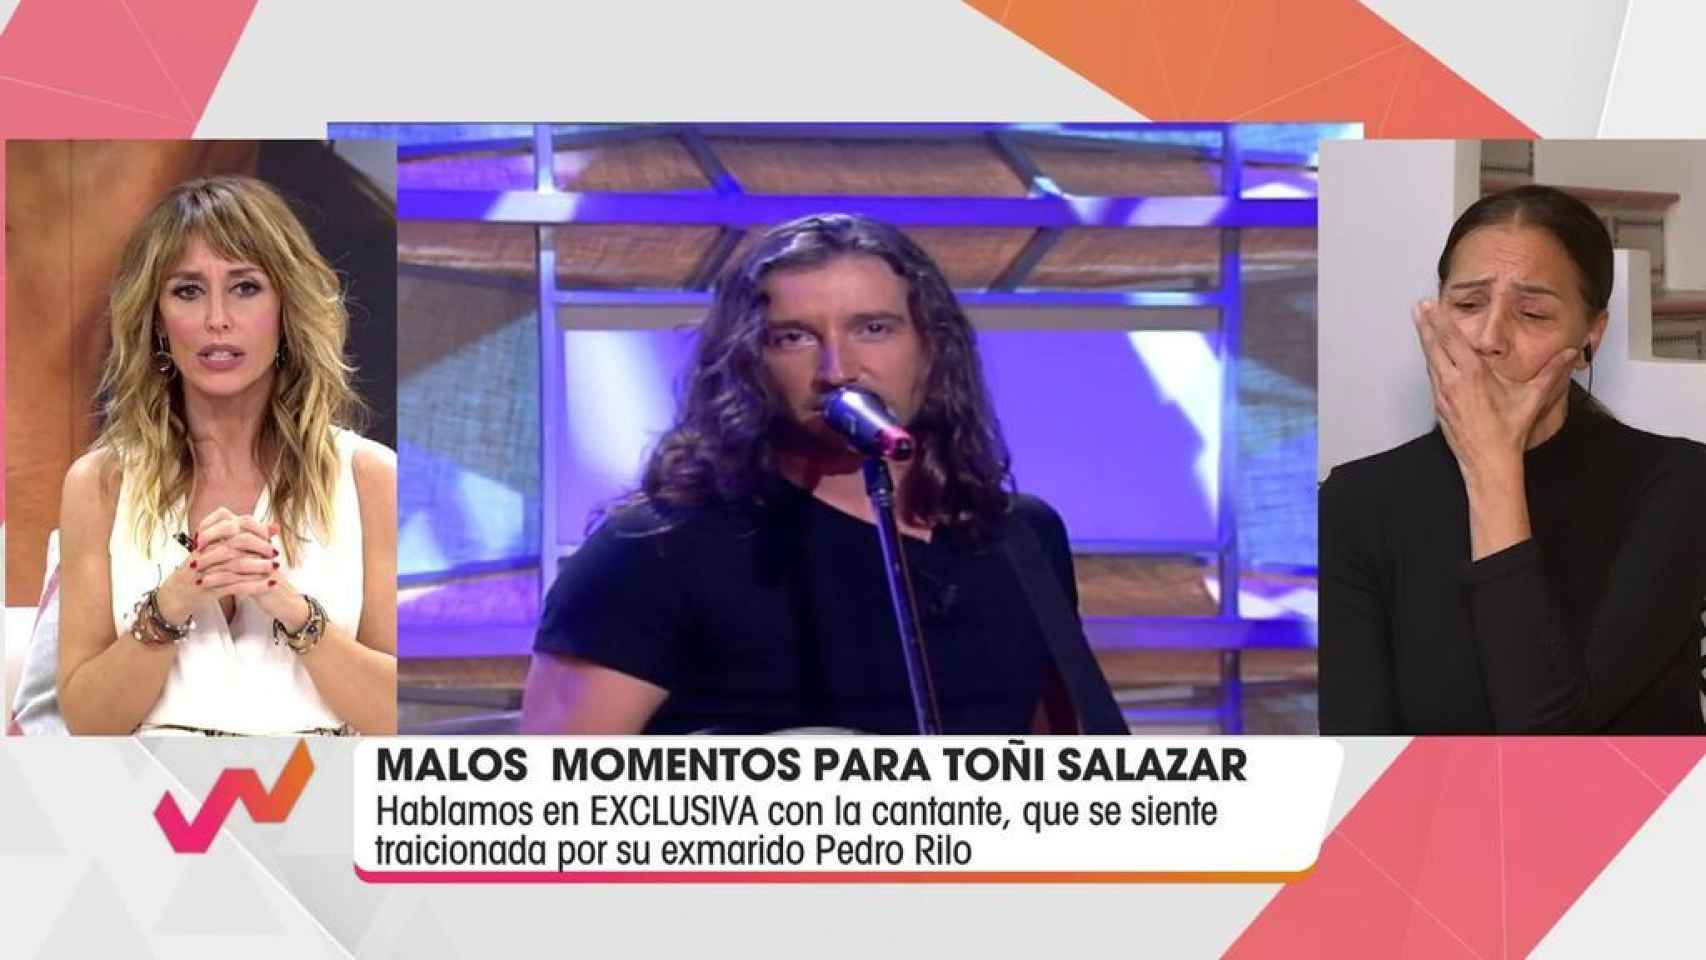 La cantante se ha mostrado visiblemente nerviosa al relatar su guerra contra Pedro Rilo.